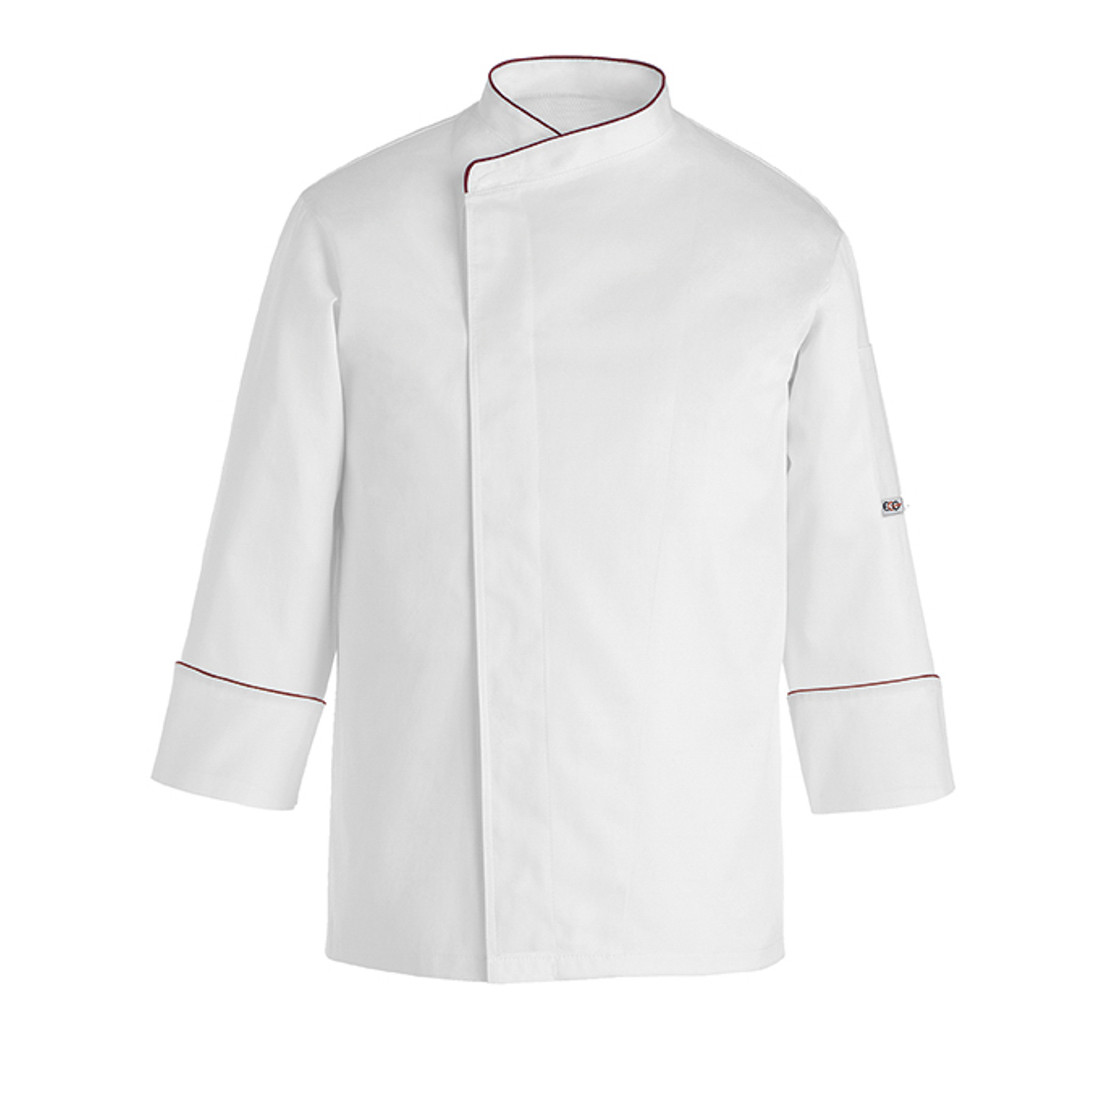 Chaqueta chef Comfort, 100% algodón - Ropa de protección